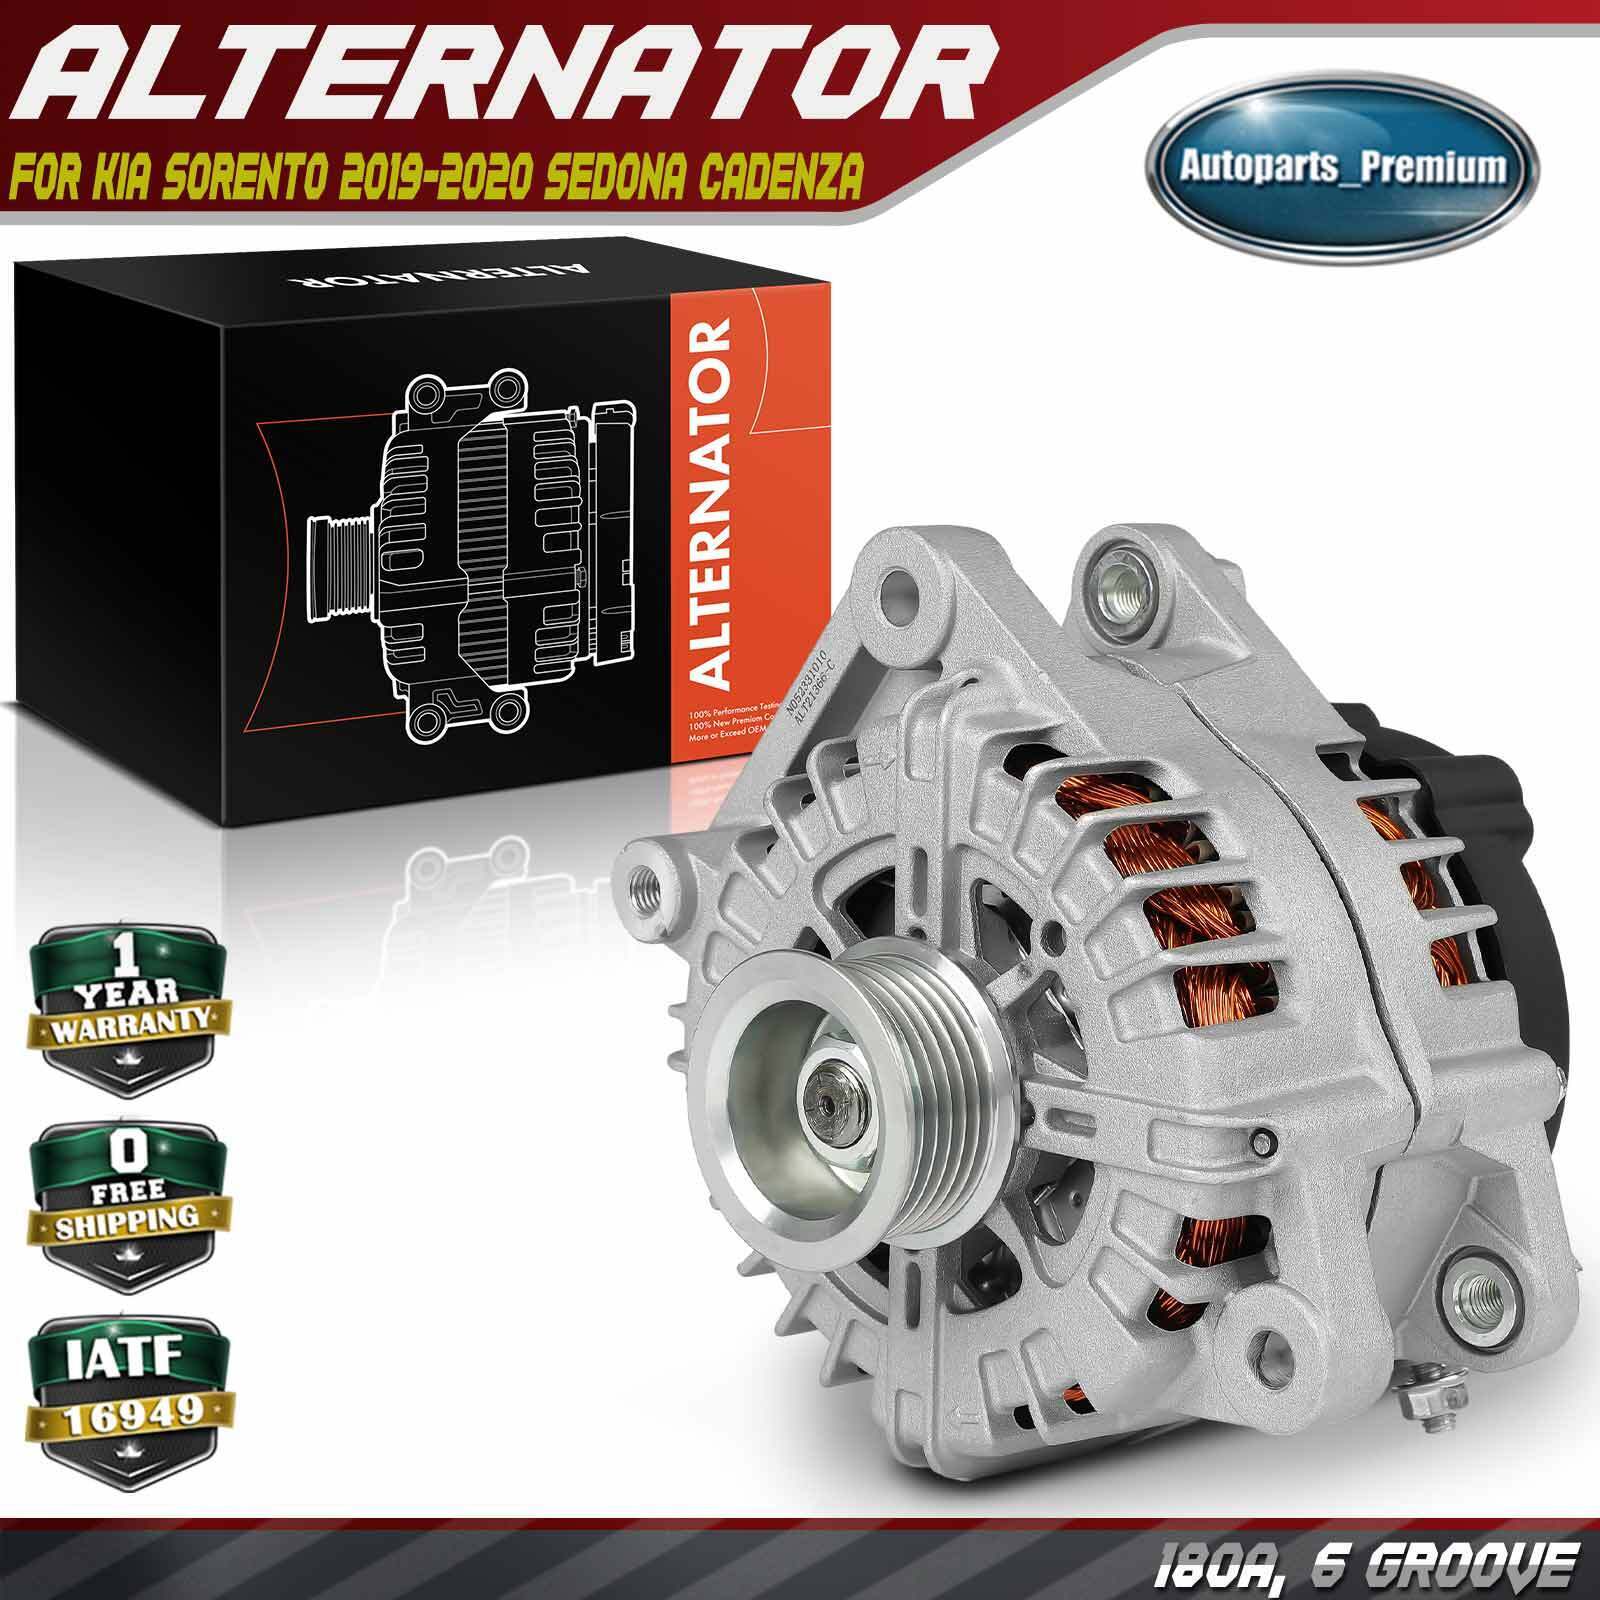 Alternator for Kia Sorento 2019-2020 Sedona 19-21 Cadenza 180A 12V CW 6-Groove